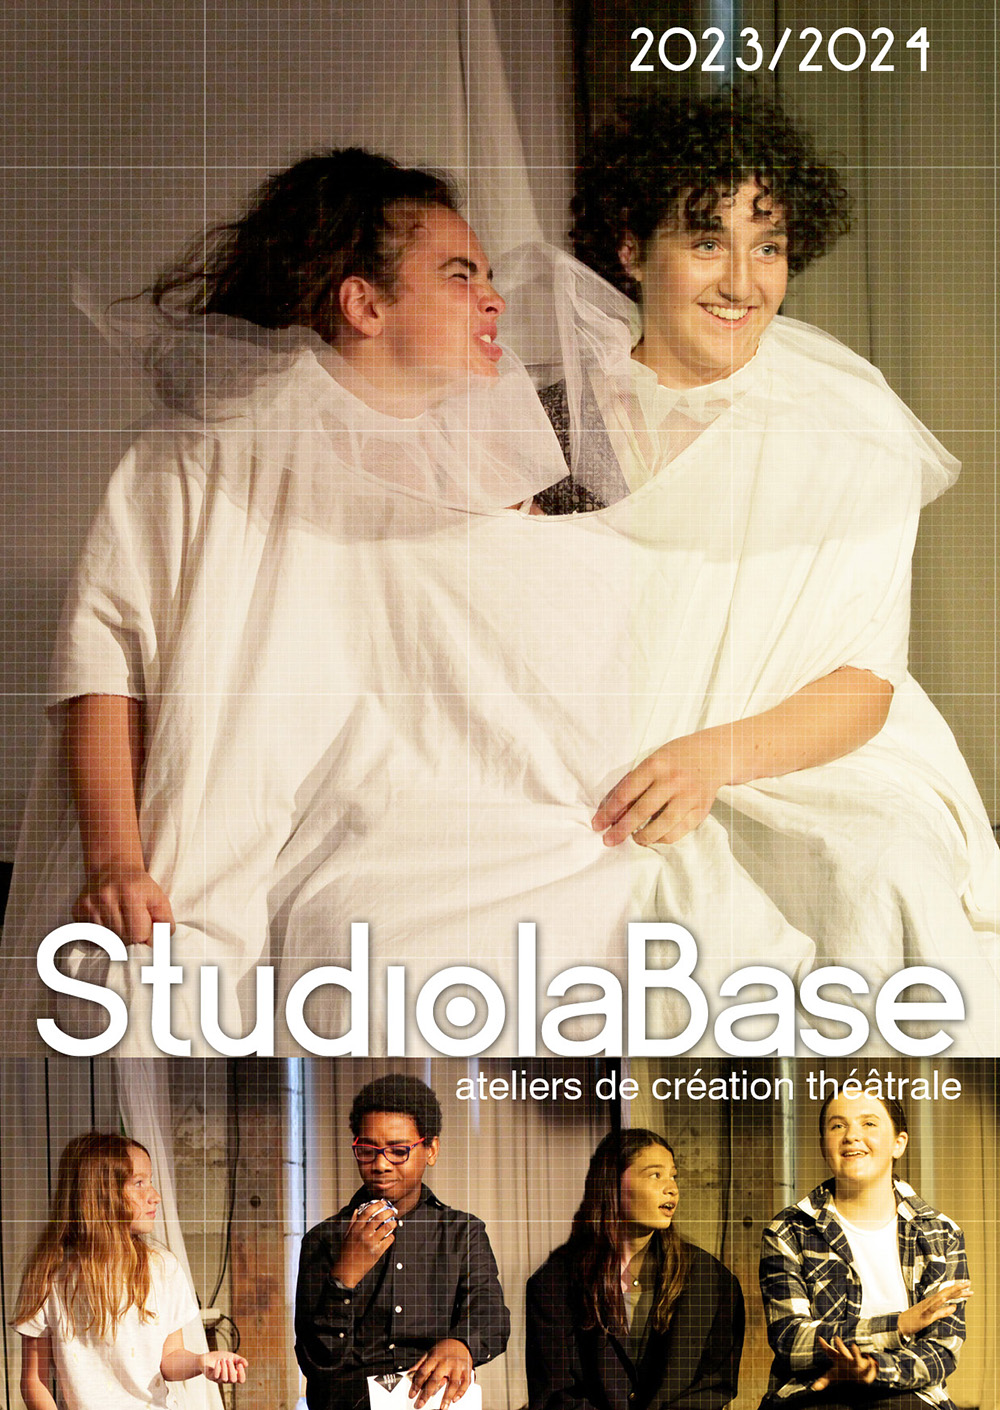 La rentrée des ateliers de théâtre des StudiolaBase